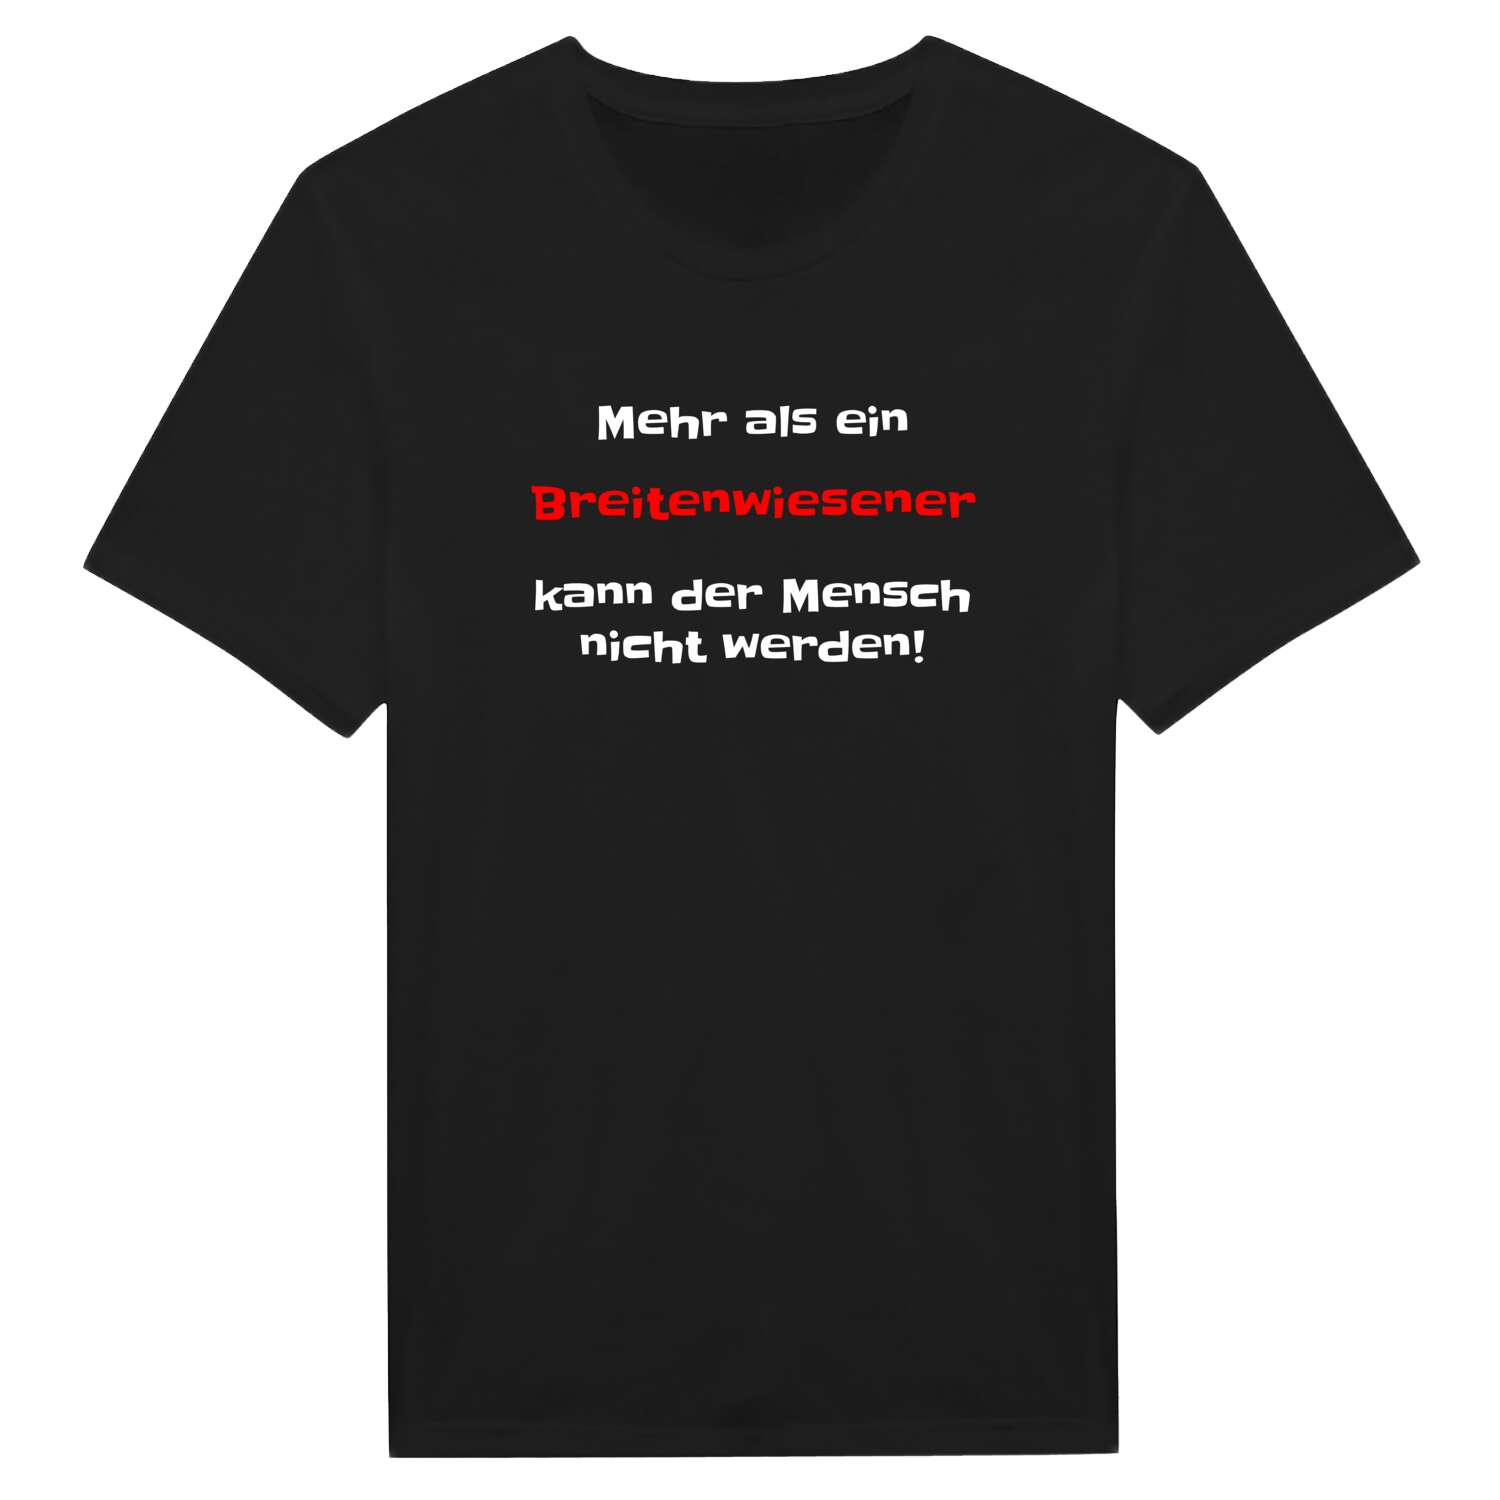 Breitenwiesen T-Shirt »Mehr als ein«